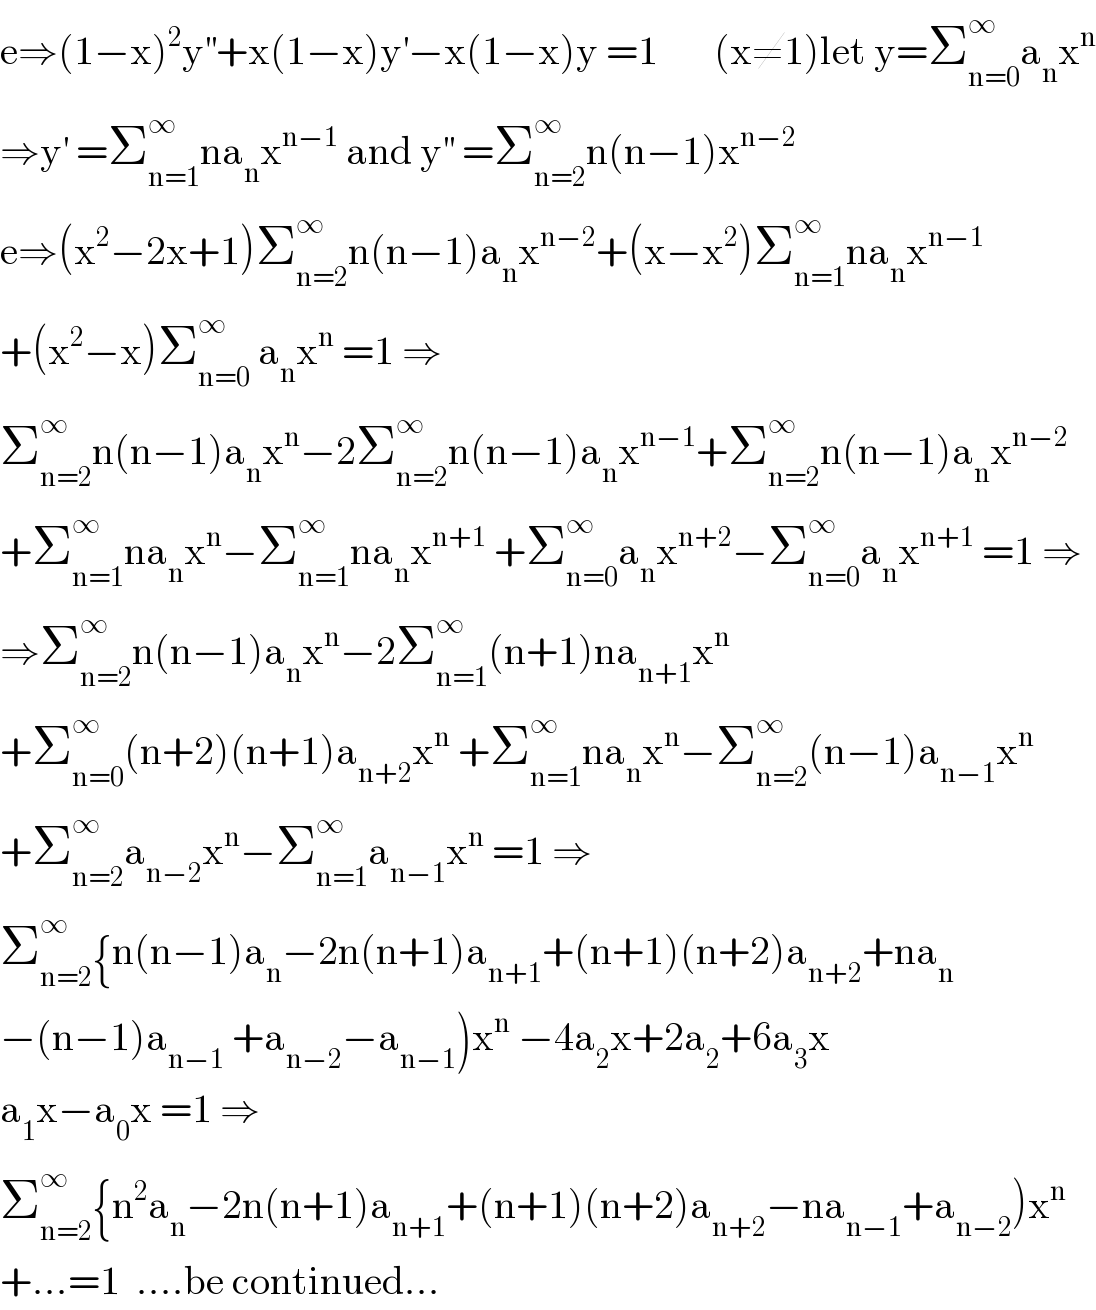 e⇒(1−x)^2 y^(′′) +x(1−x)y^′ −x(1−x)y =1       (x≠1)let y=Σ_(n=0) ^∞ a_n x^n   ⇒y^′  =Σ_(n=1) ^∞ na_n x^(n−1)  and y^(′′)  =Σ_(n=2) ^∞ n(n−1)x^(n−2)   e⇒(x^2 −2x+1)Σ_(n=2) ^∞ n(n−1)a_n x^(n−2) +(x−x^2 )Σ_(n=1) ^∞ na_n x^(n−1)   +(x^2 −x)Σ_(n=0) ^∞  a_n x^n  =1 ⇒  Σ_(n=2) ^∞ n(n−1)a_n x^n −2Σ_(n=2) ^∞ n(n−1)a_n x^(n−1) +Σ_(n=2) ^∞ n(n−1)a_n x^(n−2)   +Σ_(n=1) ^∞ na_n x^n −Σ_(n=1) ^∞ na_n x^(n+1)  +Σ_(n=0) ^∞ a_n x^(n+2) −Σ_(n=0) ^∞ a_n x^(n+1)  =1 ⇒  ⇒Σ_(n=2) ^∞ n(n−1)a_n x^n −2Σ_(n=1) ^∞ (n+1)na_(n+1) x^n   +Σ_(n=0) ^∞ (n+2)(n+1)a_(n+2) x^n  +Σ_(n=1) ^∞ na_n x^n −Σ_(n=2) ^∞ (n−1)a_(n−1) x^n   +Σ_(n=2) ^∞ a_(n−2) x^n −Σ_(n=1) ^∞ a_(n−1) x^n  =1 ⇒  Σ_(n=2) ^∞ {n(n−1)a_n −2n(n+1)a_(n+1) +(n+1)(n+2)a_(n+2) +na_n   −(n−1)a_(n−1)  +a_(n−2) −a_(n−1) )x^n  −4a_2 x+2a_2 +6a_3 x  a_1 x−a_0 x =1 ⇒  Σ_(n=2) ^∞ {n^2 a_n −2n(n+1)a_(n+1) +(n+1)(n+2)a_(n+2) −na_(n−1) +a_(n−2) )x^n   +...=1  ....be continued...  